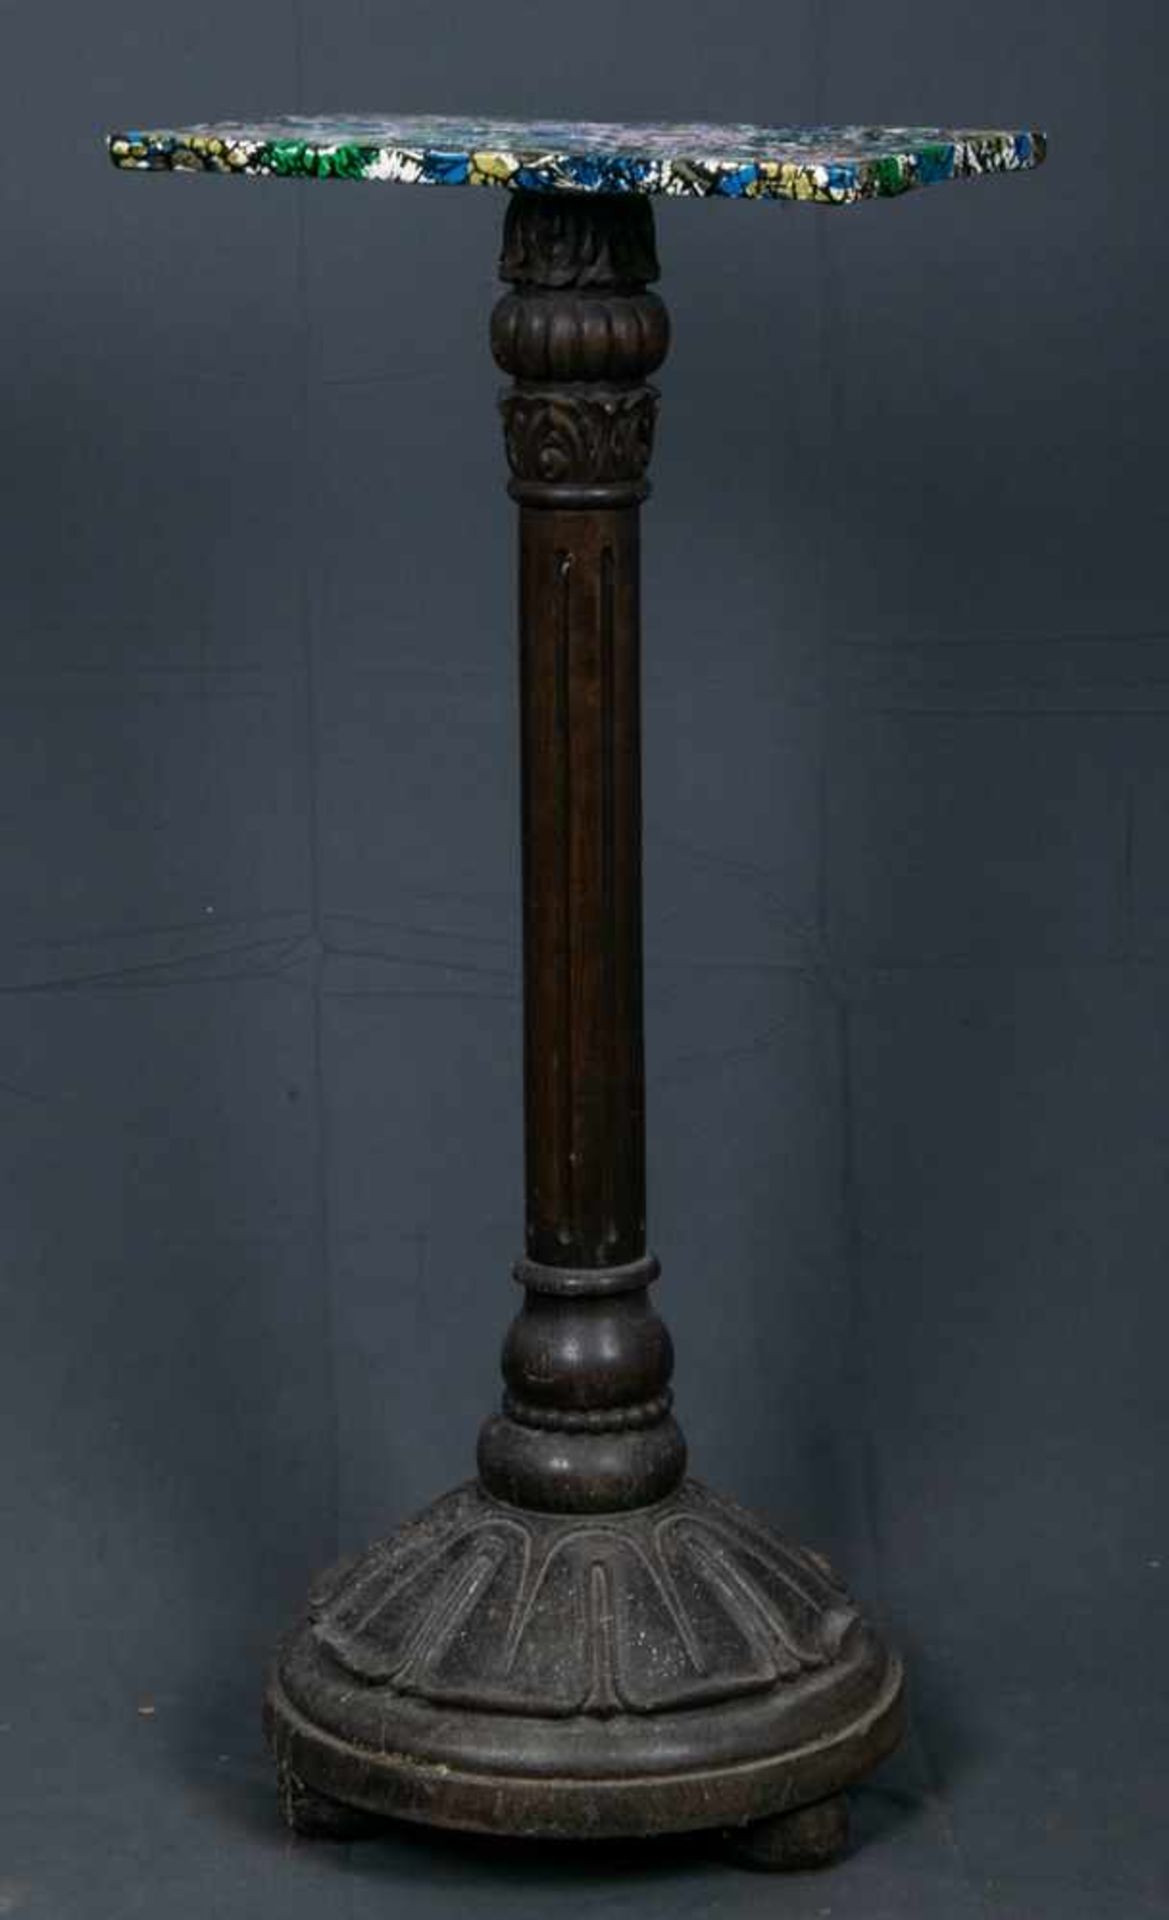 Säulenartiger Beistelltisch, z. B. für eine Büste o. ä., geschnitzter Holzfuß, dunkel gebeizt, - Bild 5 aus 5